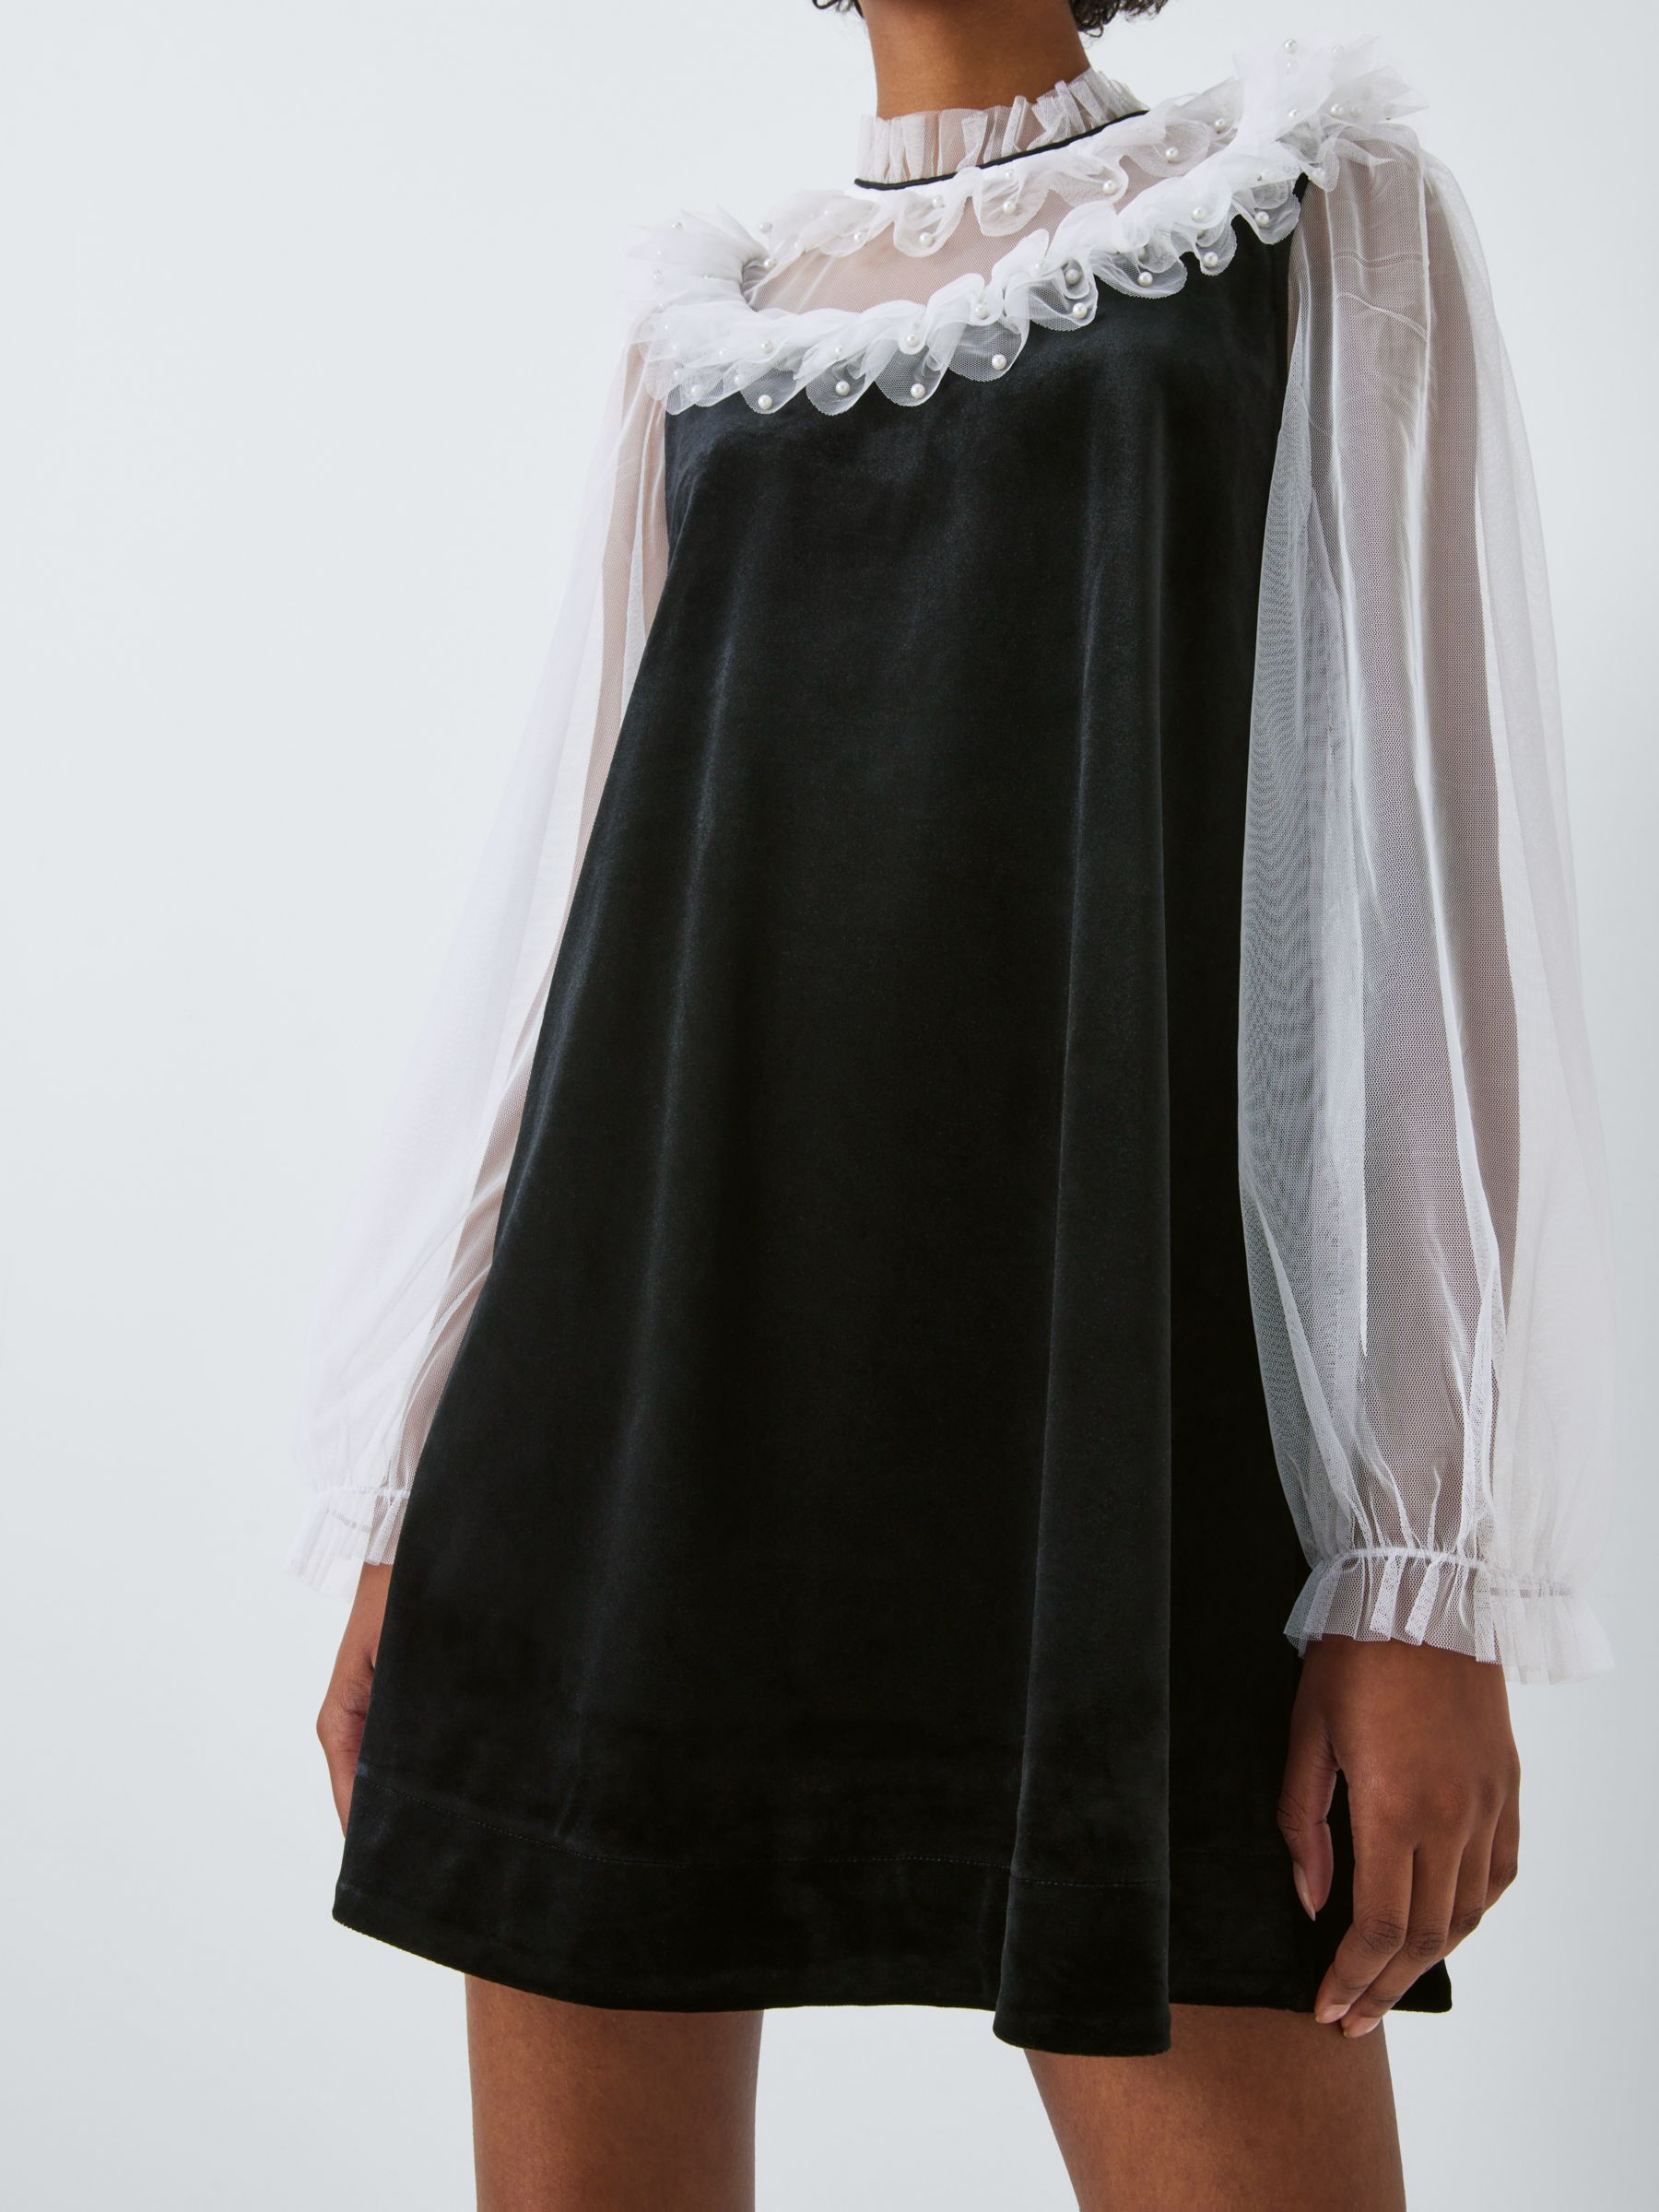 Sister Jane Mural Rose Mini Dress, Black £85.00